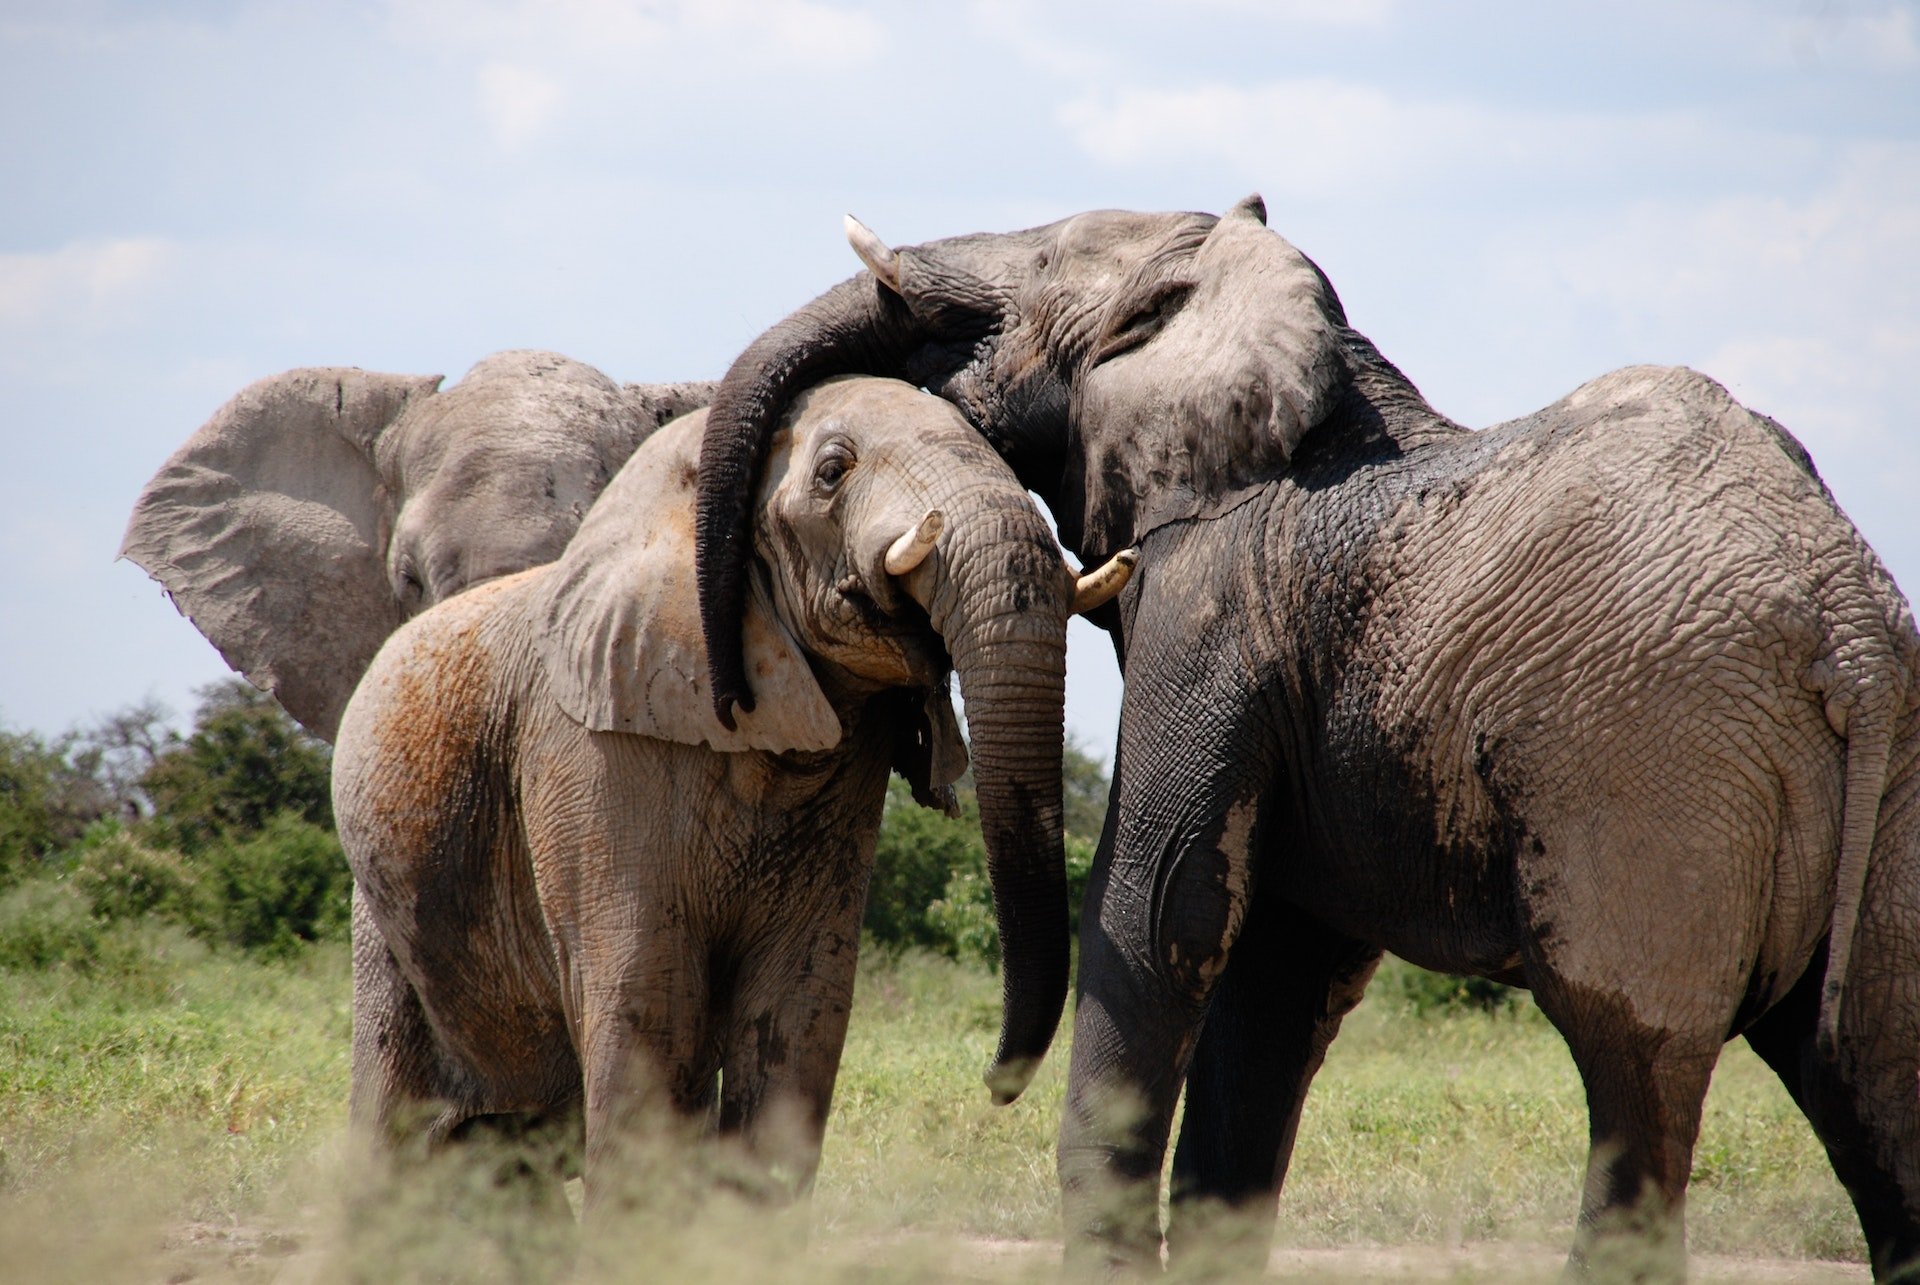 Elafanten beim spielerischen Kämpfen